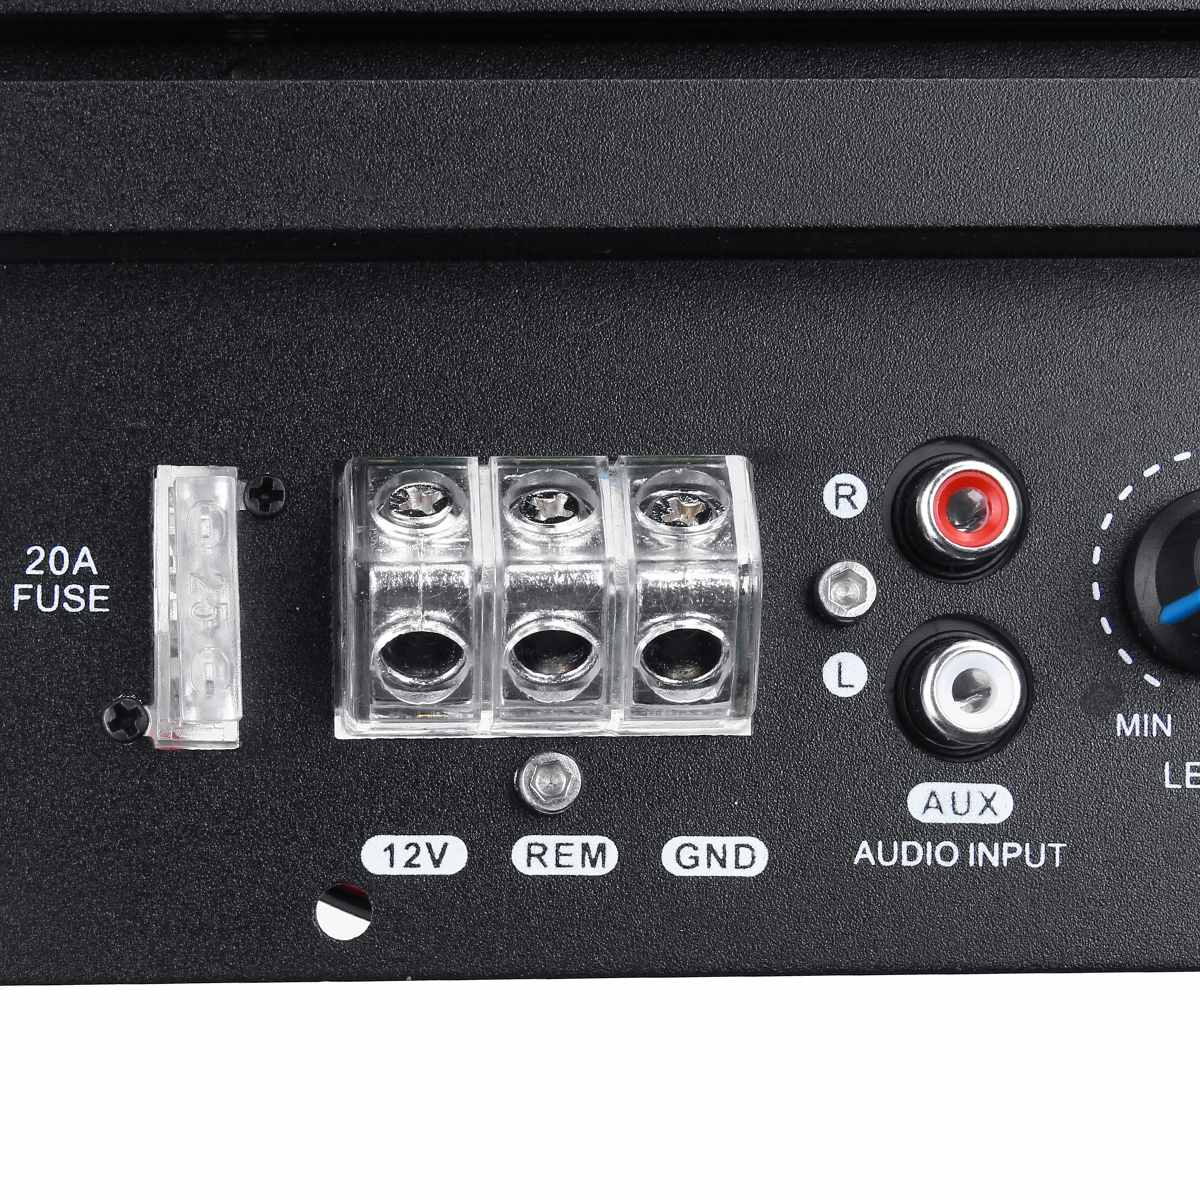 Wayfairmarket 13998-mefpvo 12 V 600 W Mono Car Audio Subwoofer Amplifier Board  